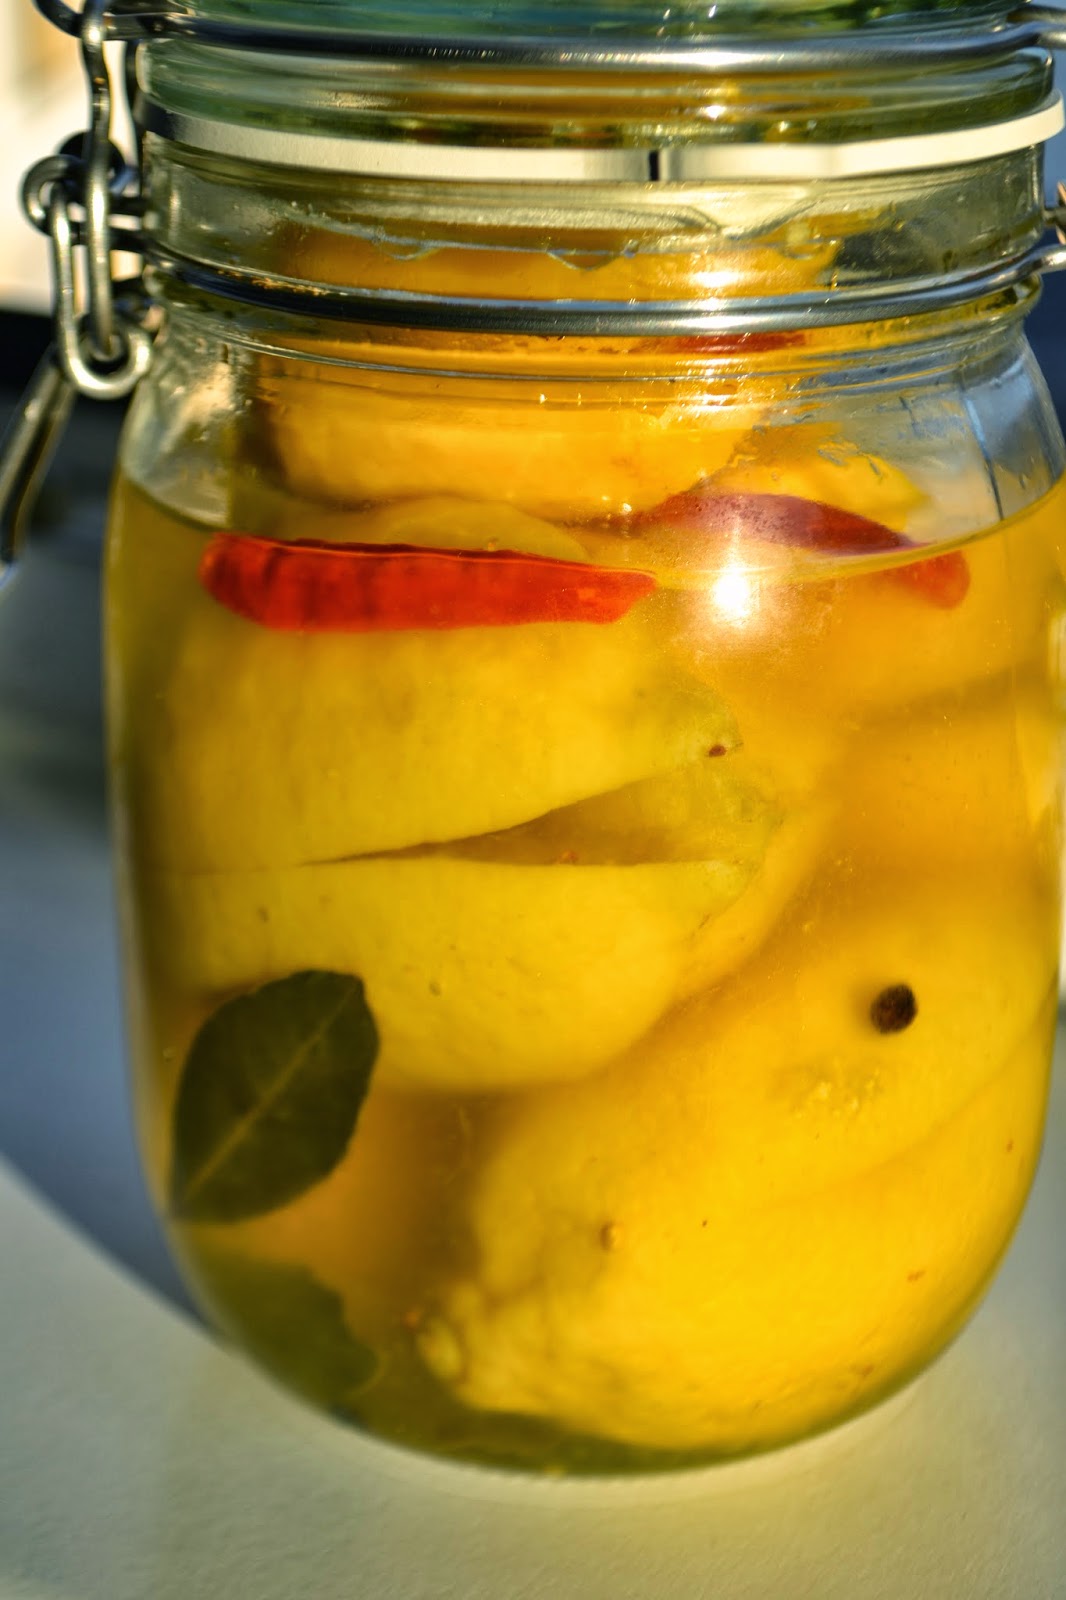 Marokkanische Eingelegte Zitronen — Rezepte Suchen